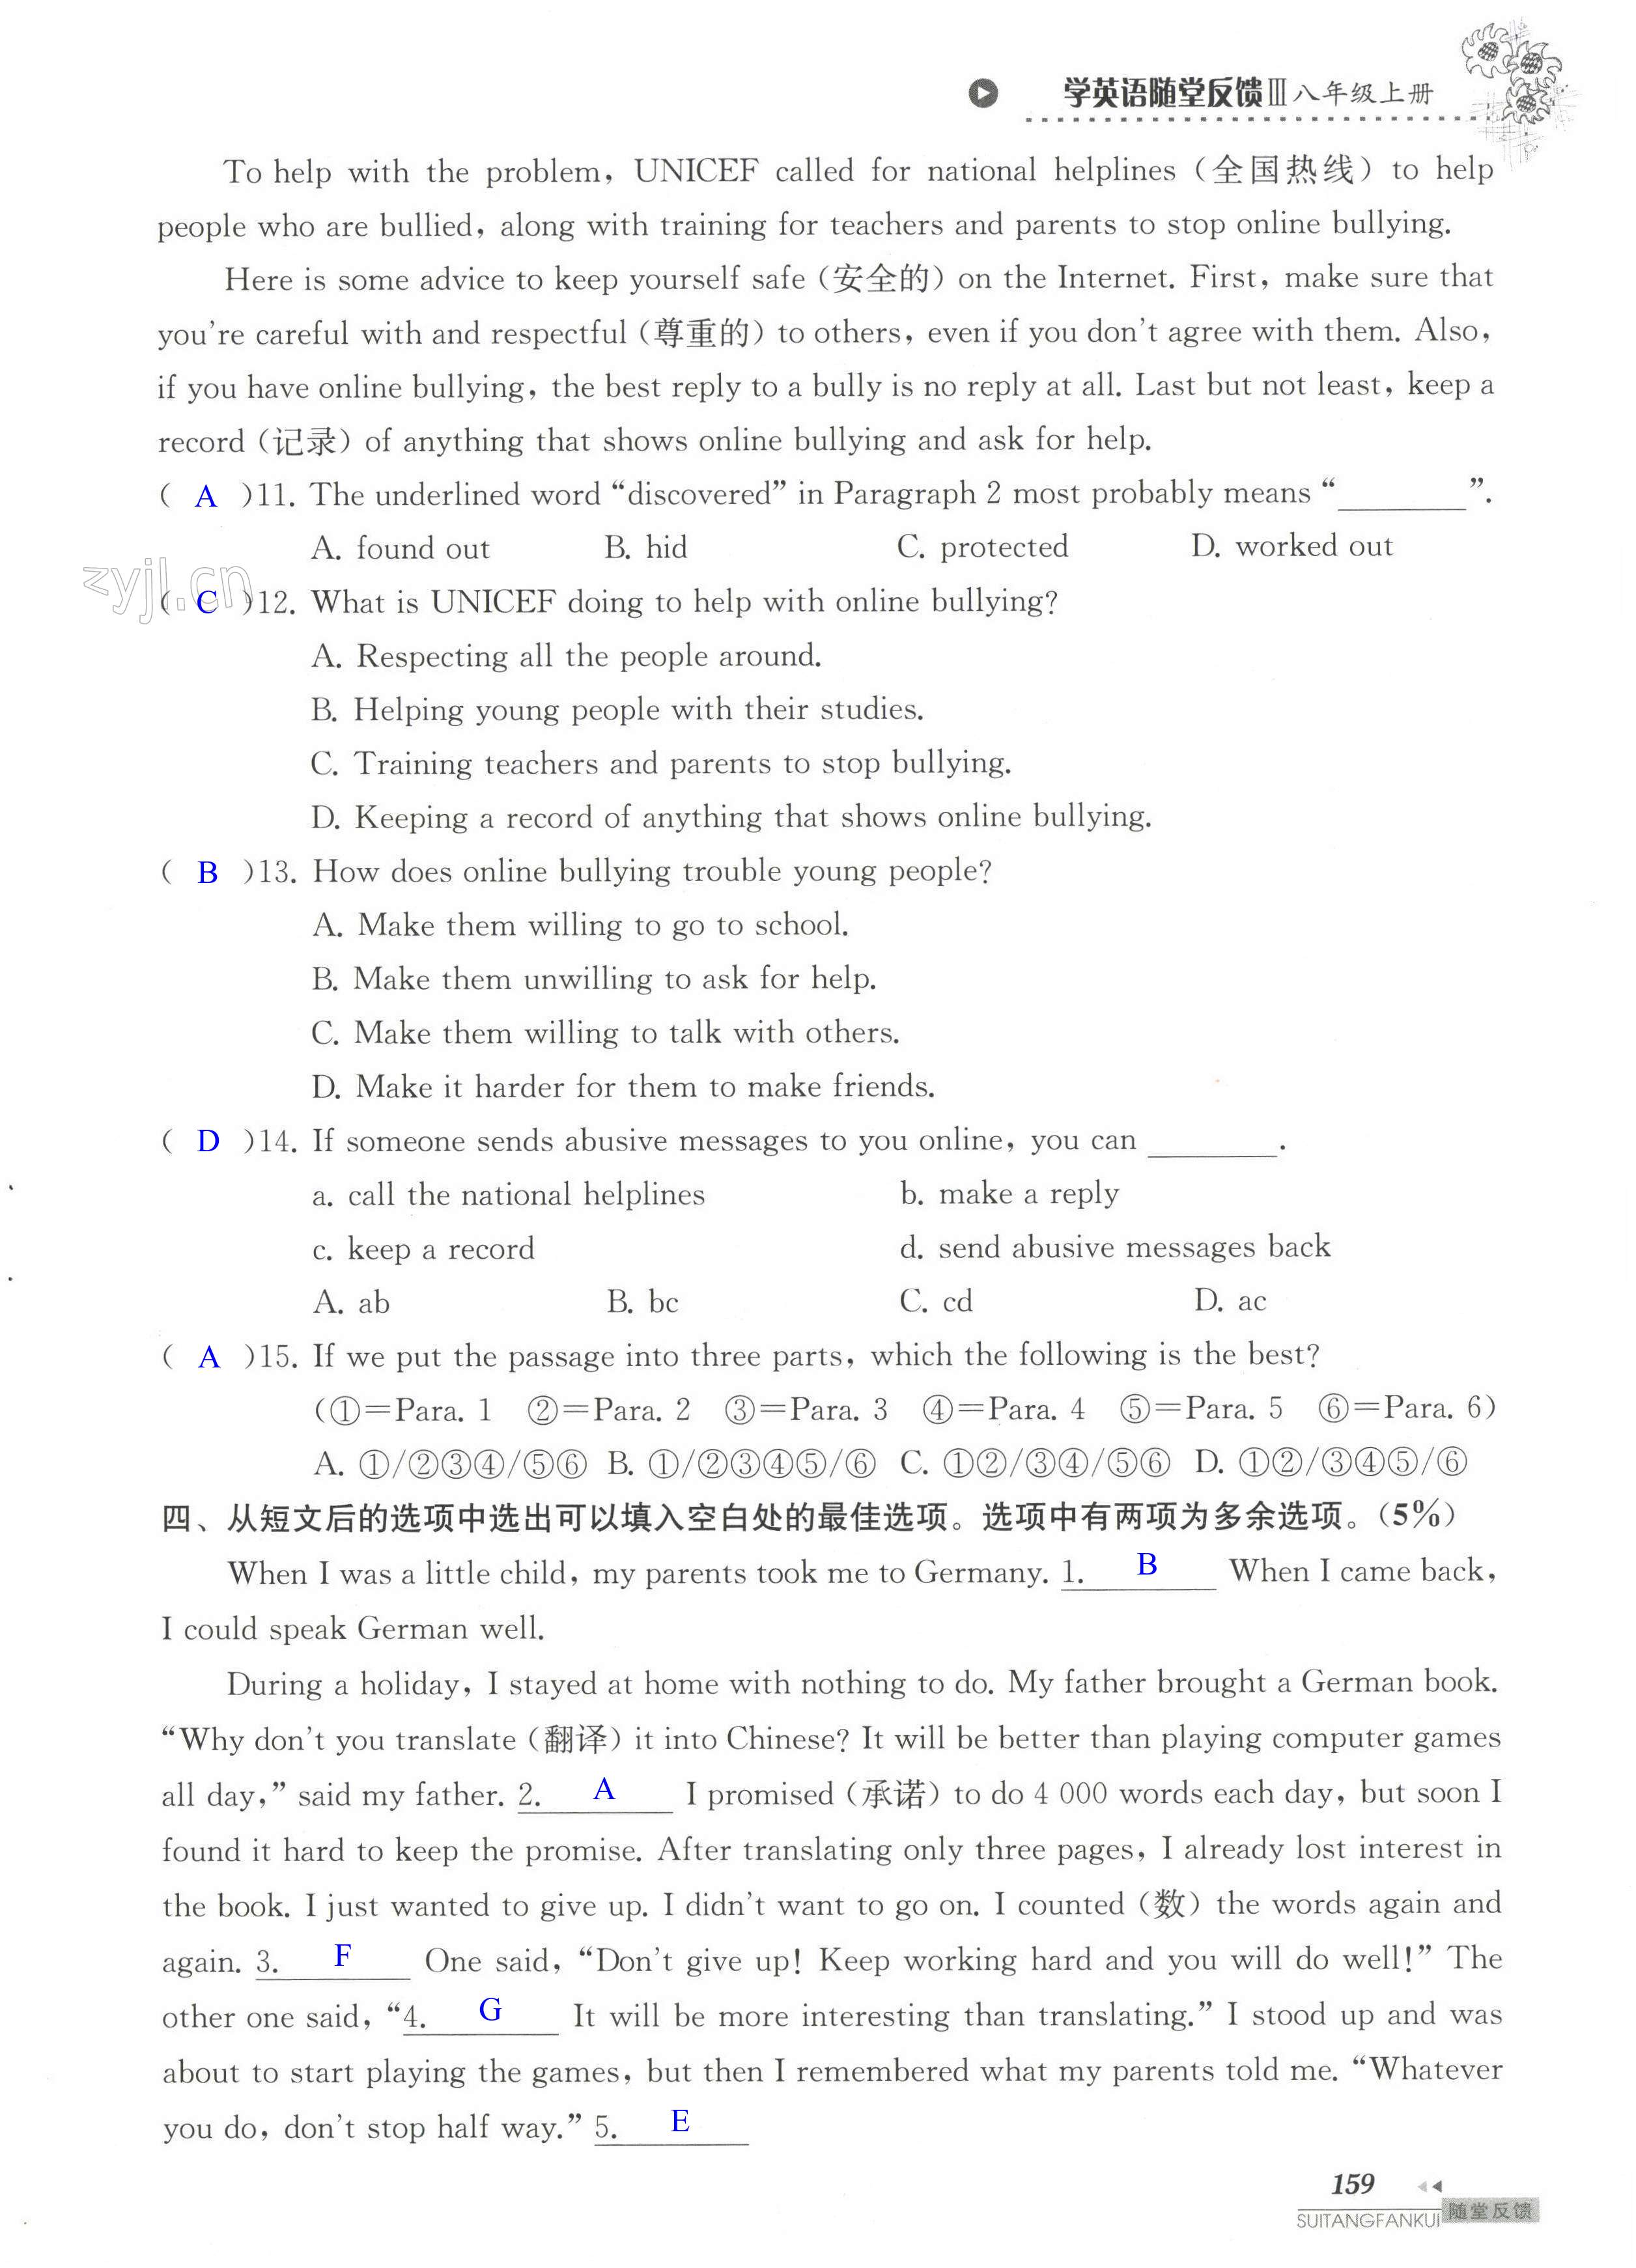 单元综合测试卷 Test for Unit 2 of 8A - 第159页